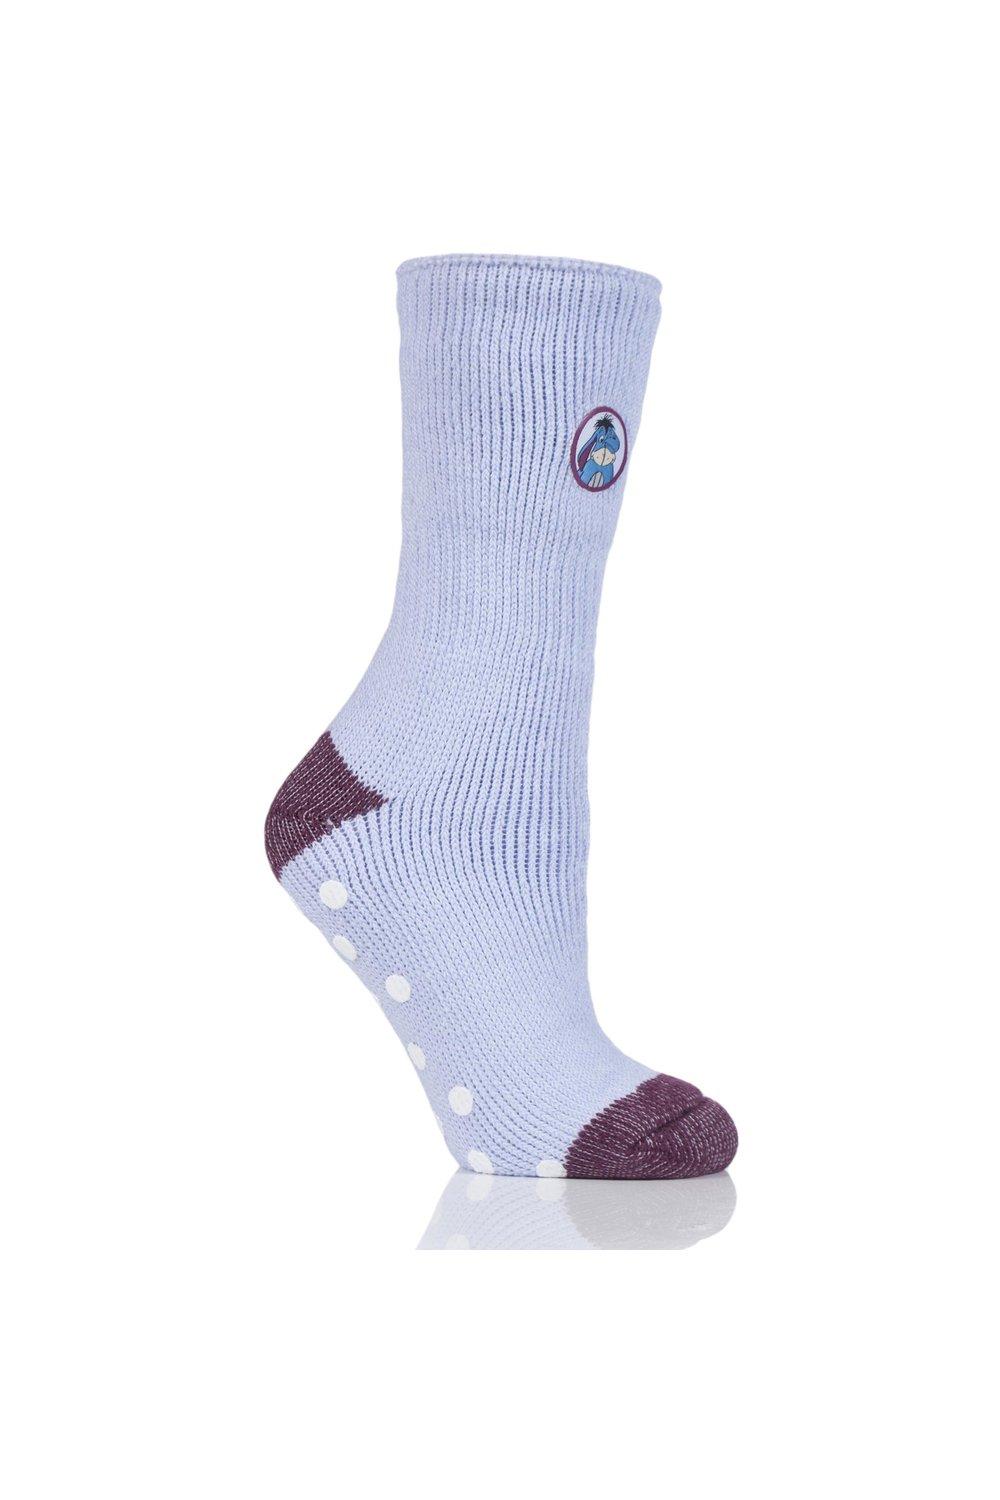 1 Pair Disney's Eeyore Slipper Socks